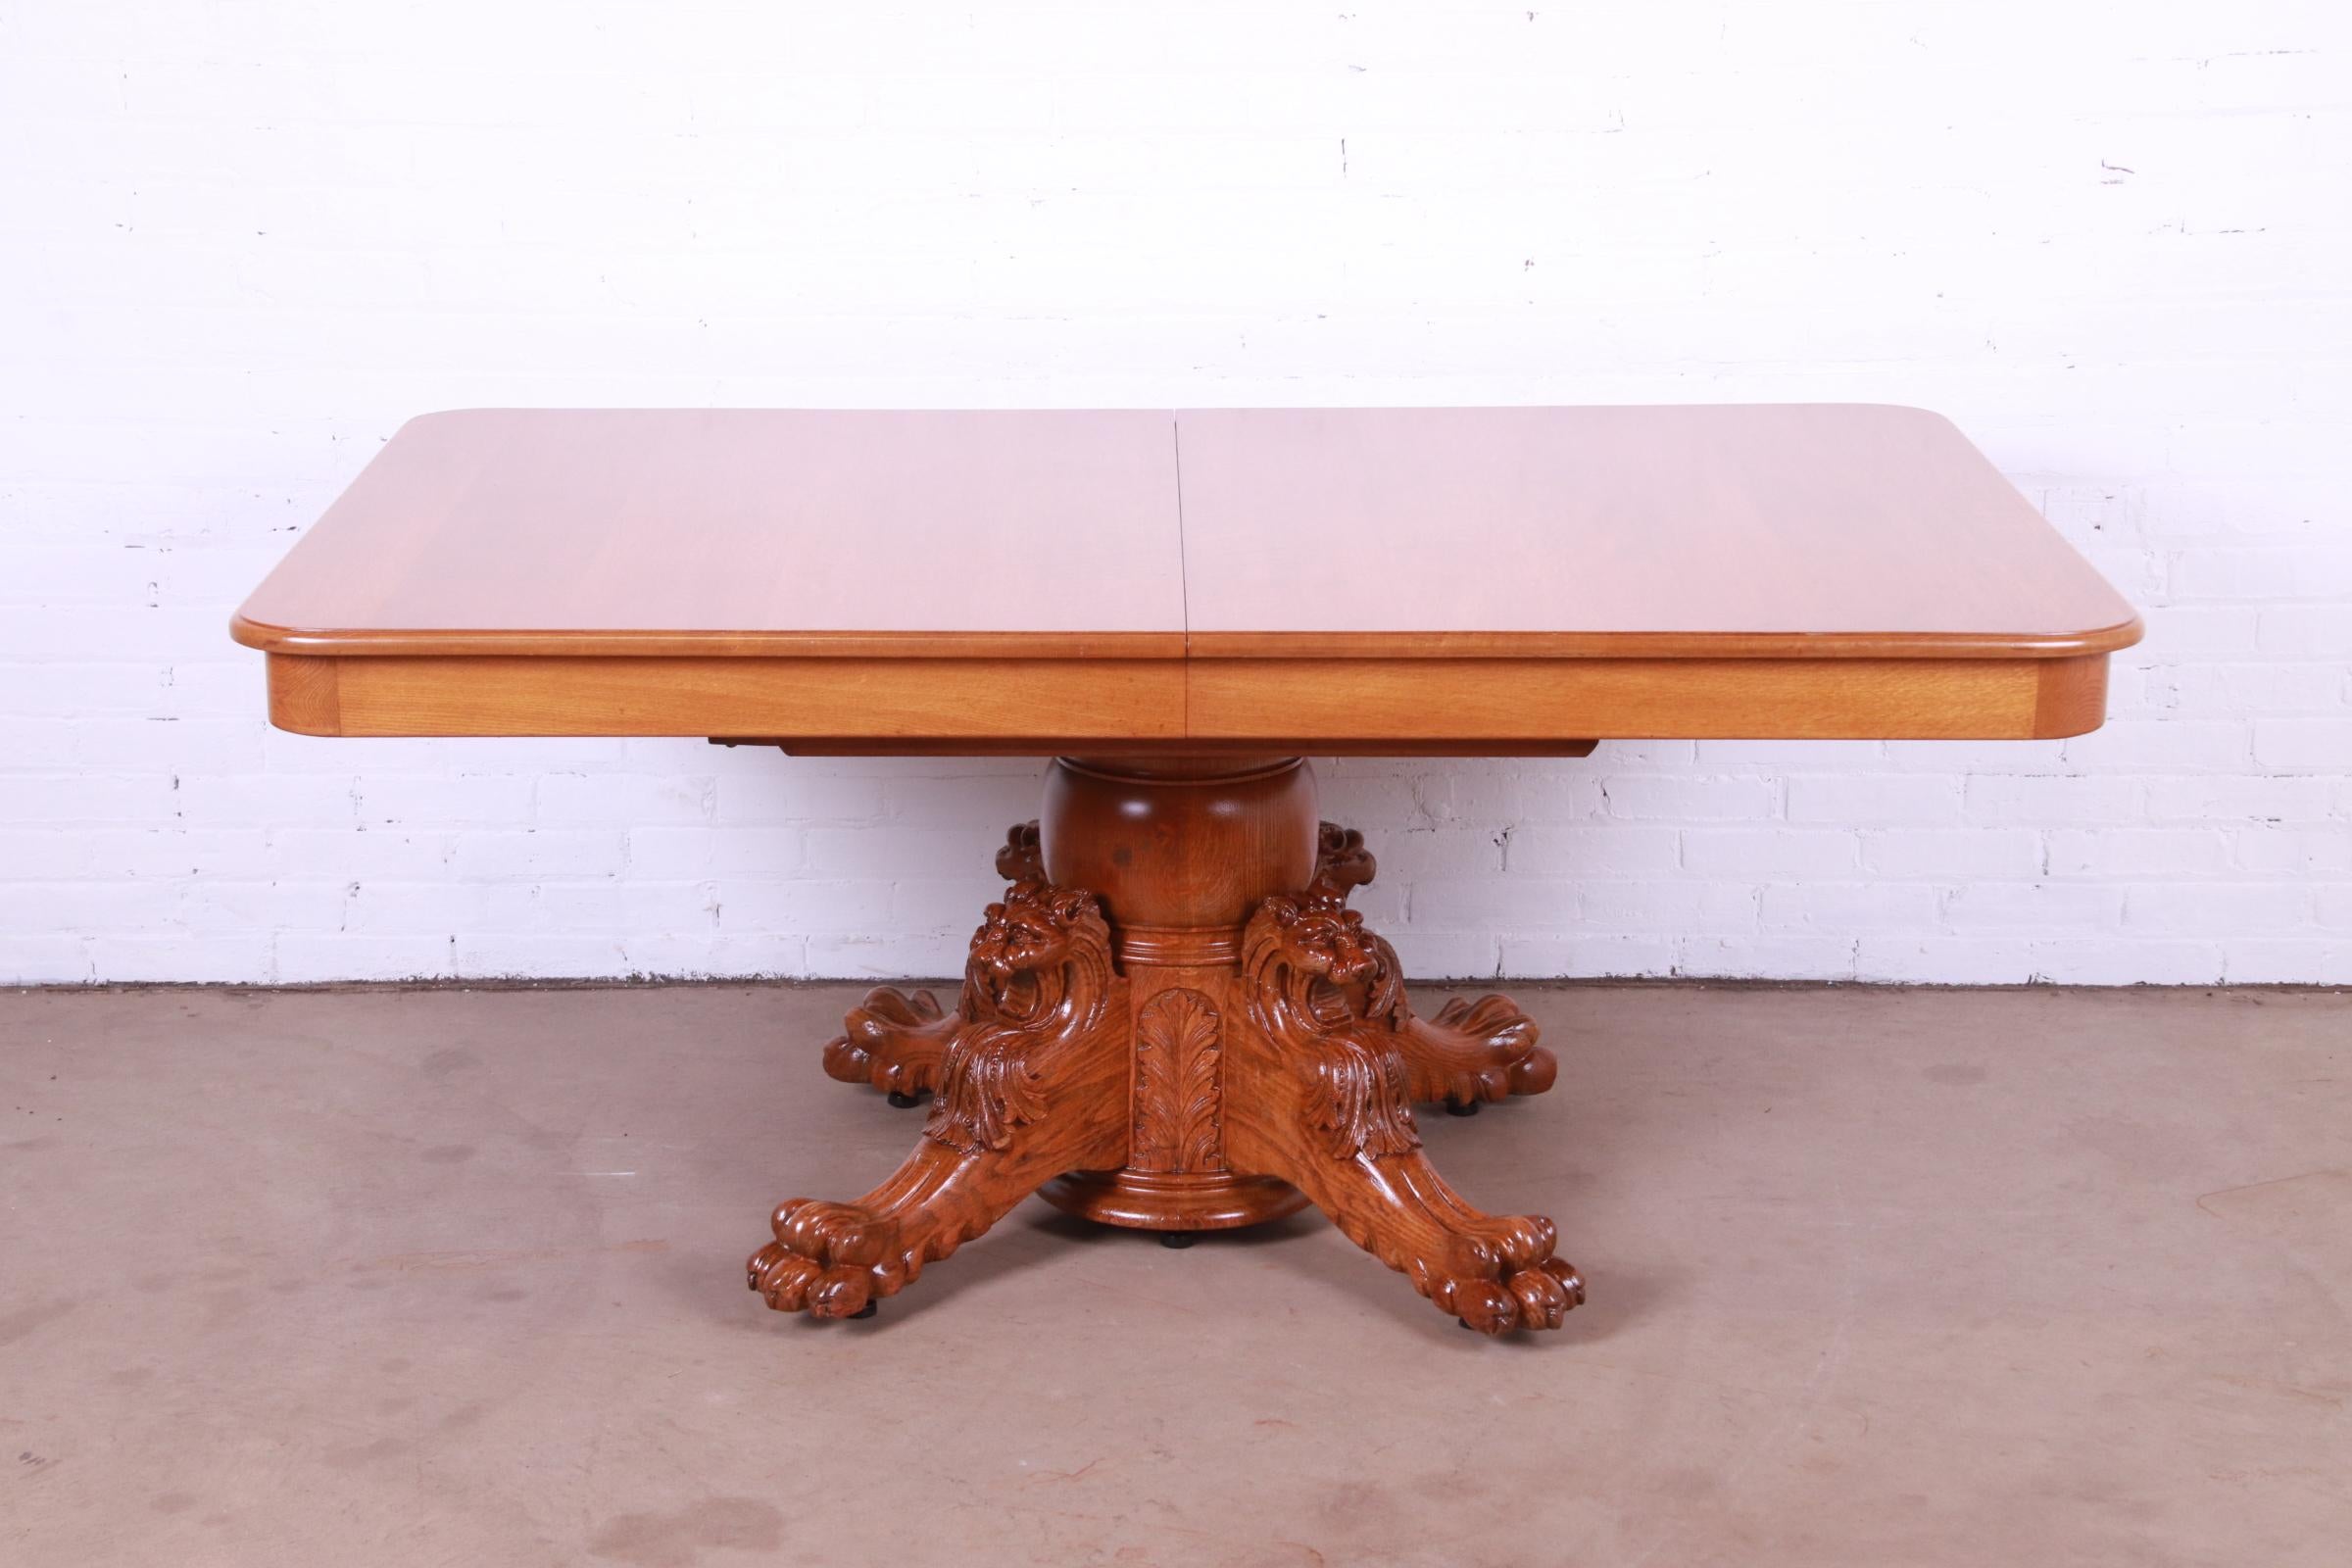 Une remarquable table à manger victorienne ancienne à piédestal.

Par R.J. Horner & Co.

États-Unis, fin du XIXe siècle.

Chêne, avec piédestal orné de têtes de lion sculptées et de pieds à pattes.

Mesures : 67 